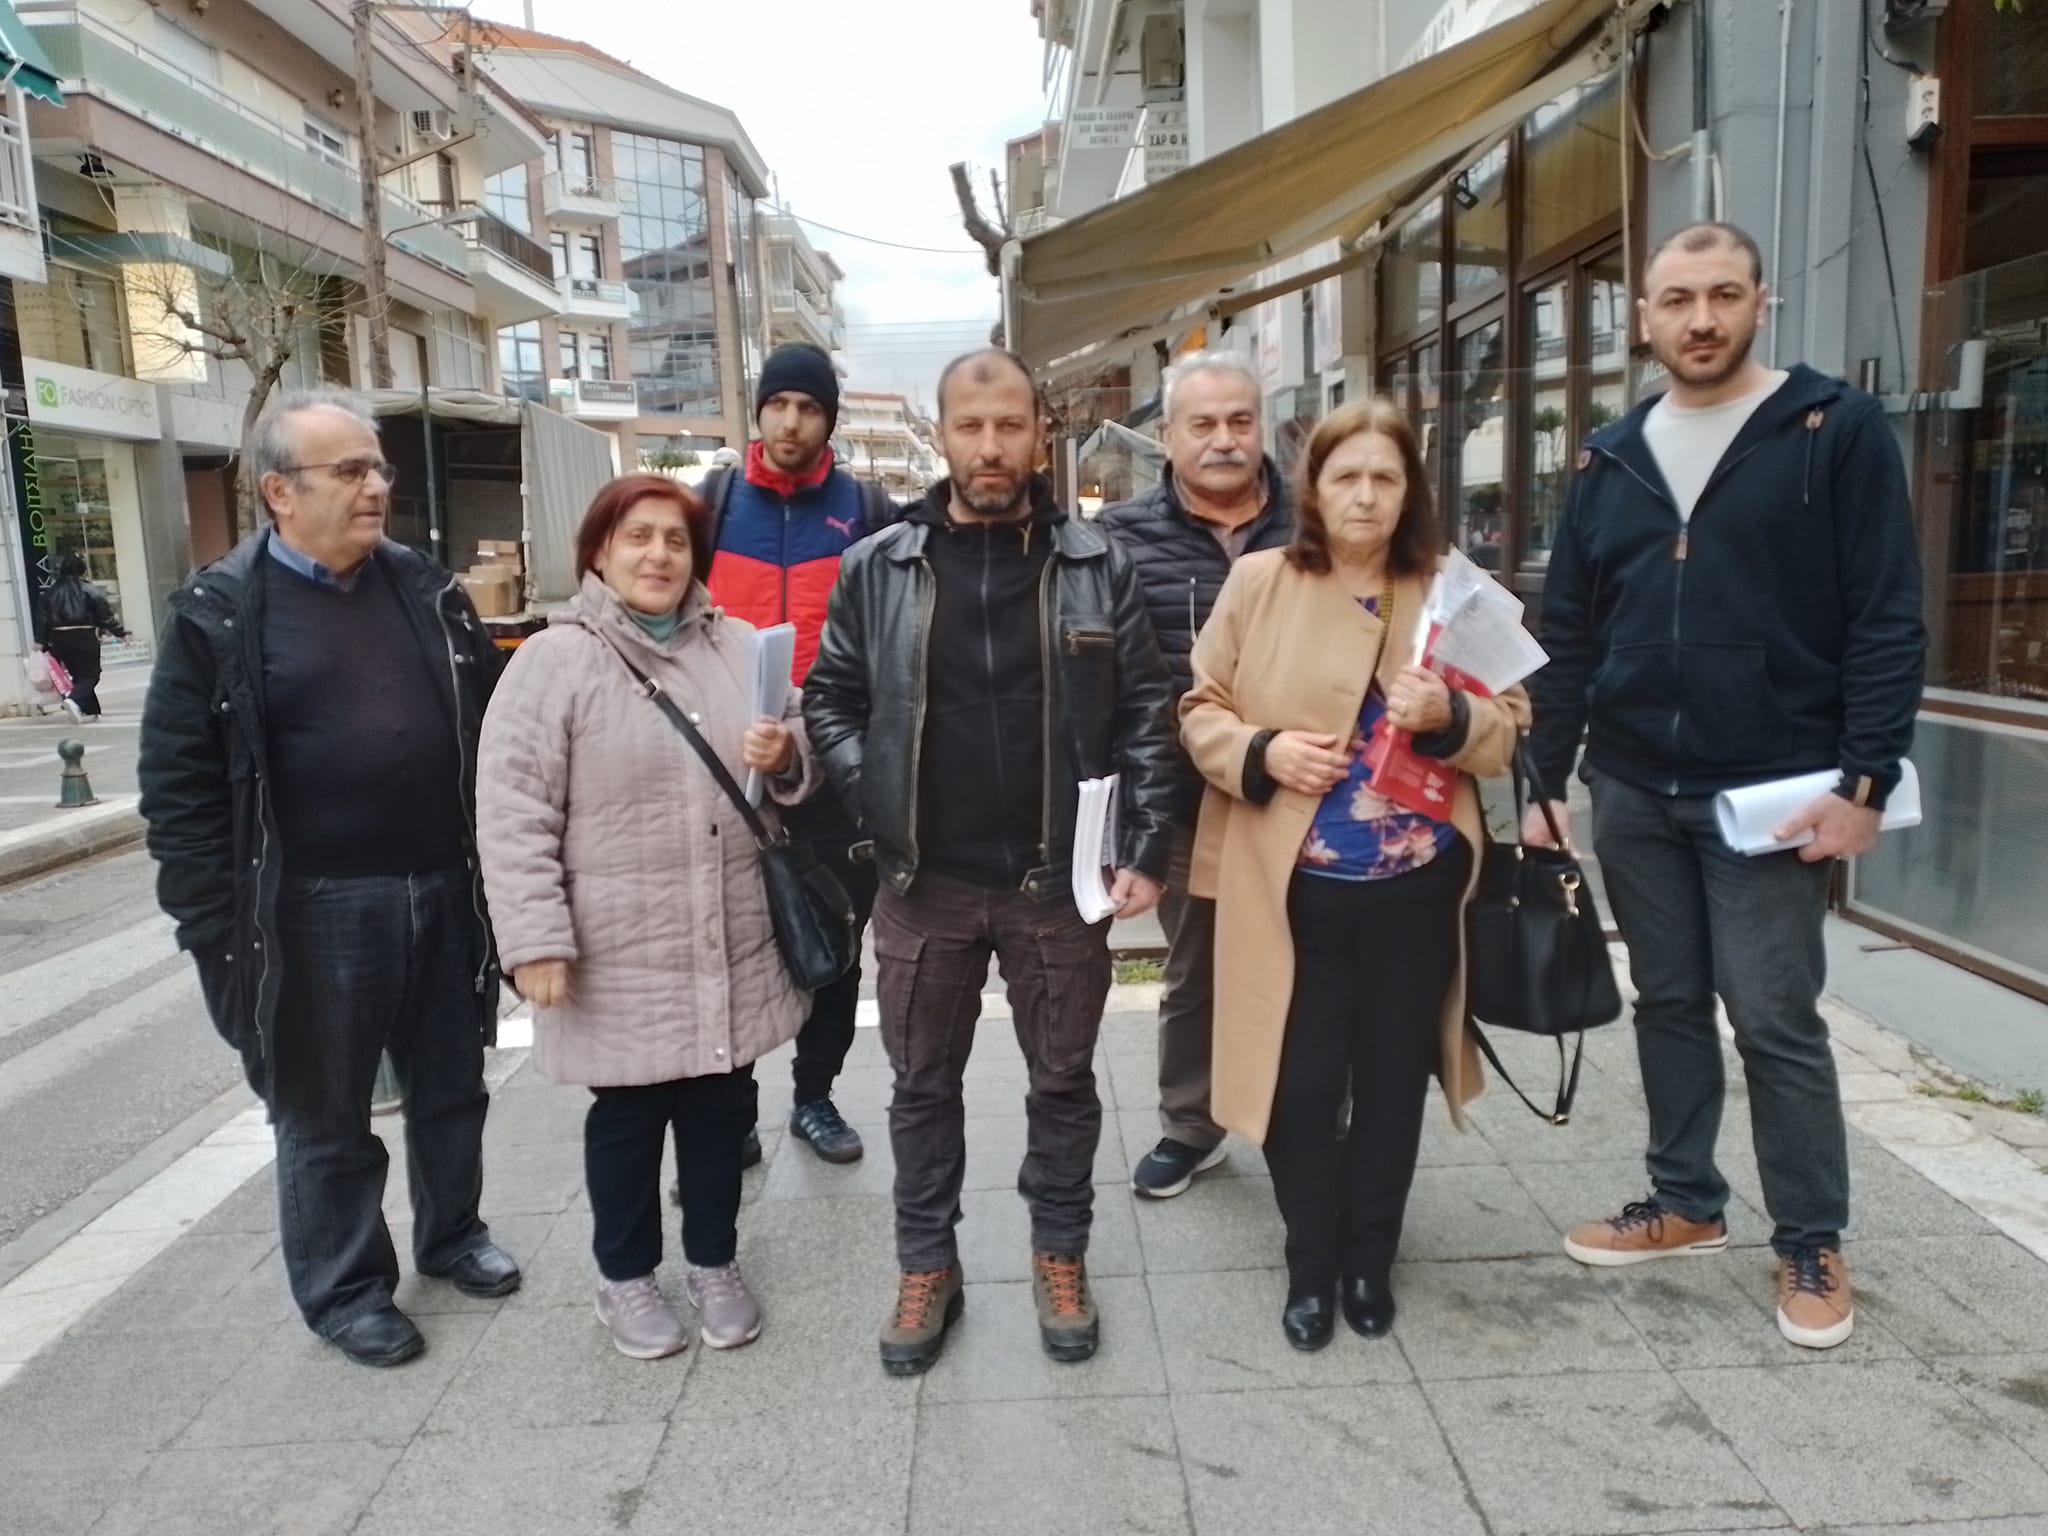 Ο υποψήφιος Βουλευτής του ΚΚΕ Σταύρος Μωυσιάδης με στελέχη του κόμματος σε προεκλογική εξόρμηση στην πόλη